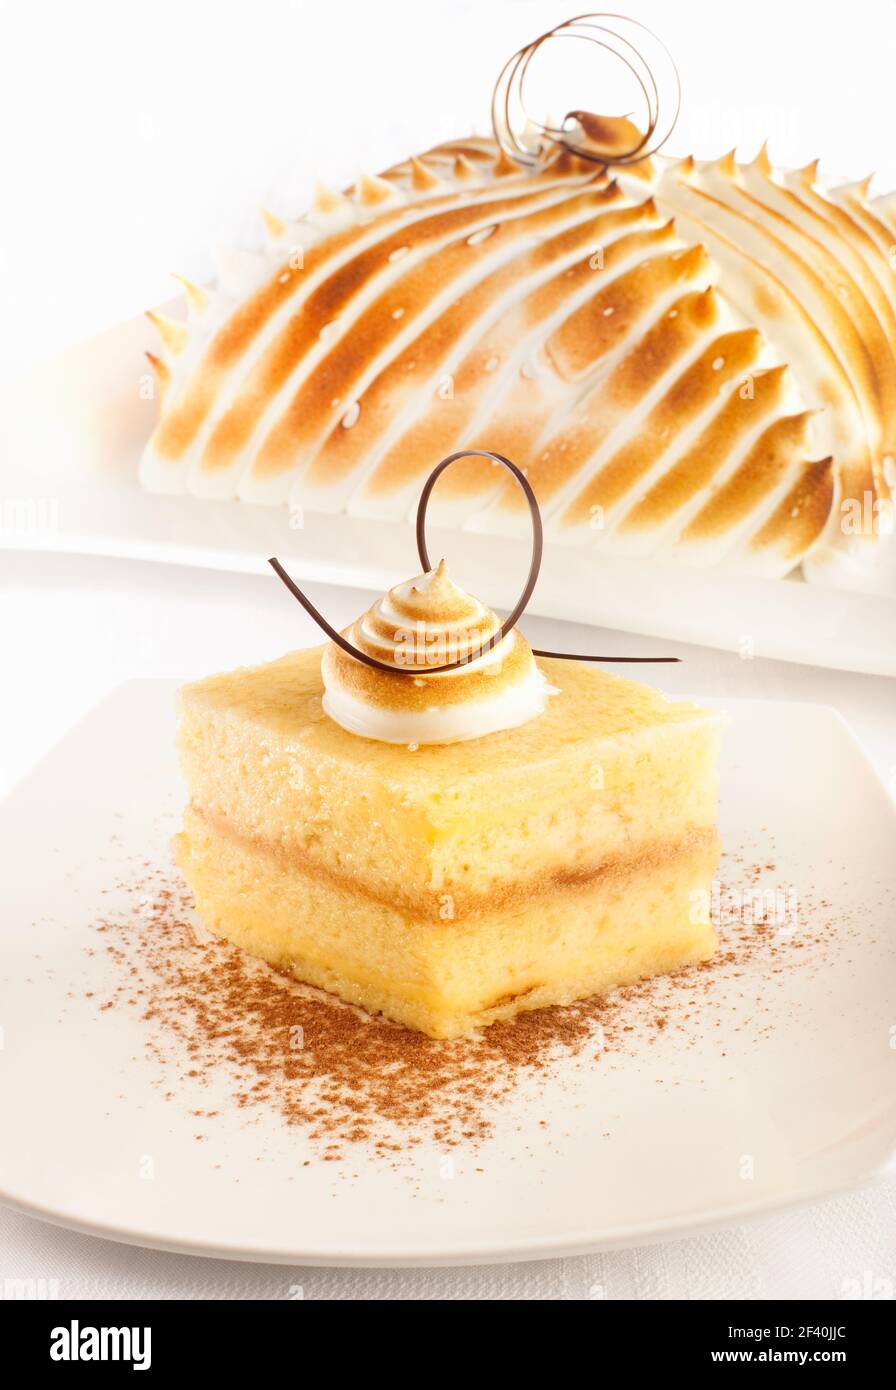 Un gâteau très populaire en Amérique latine connu sous le nom de Torta de tres sangsues, espagnol pour trois laits gâteau. Banque D'Images